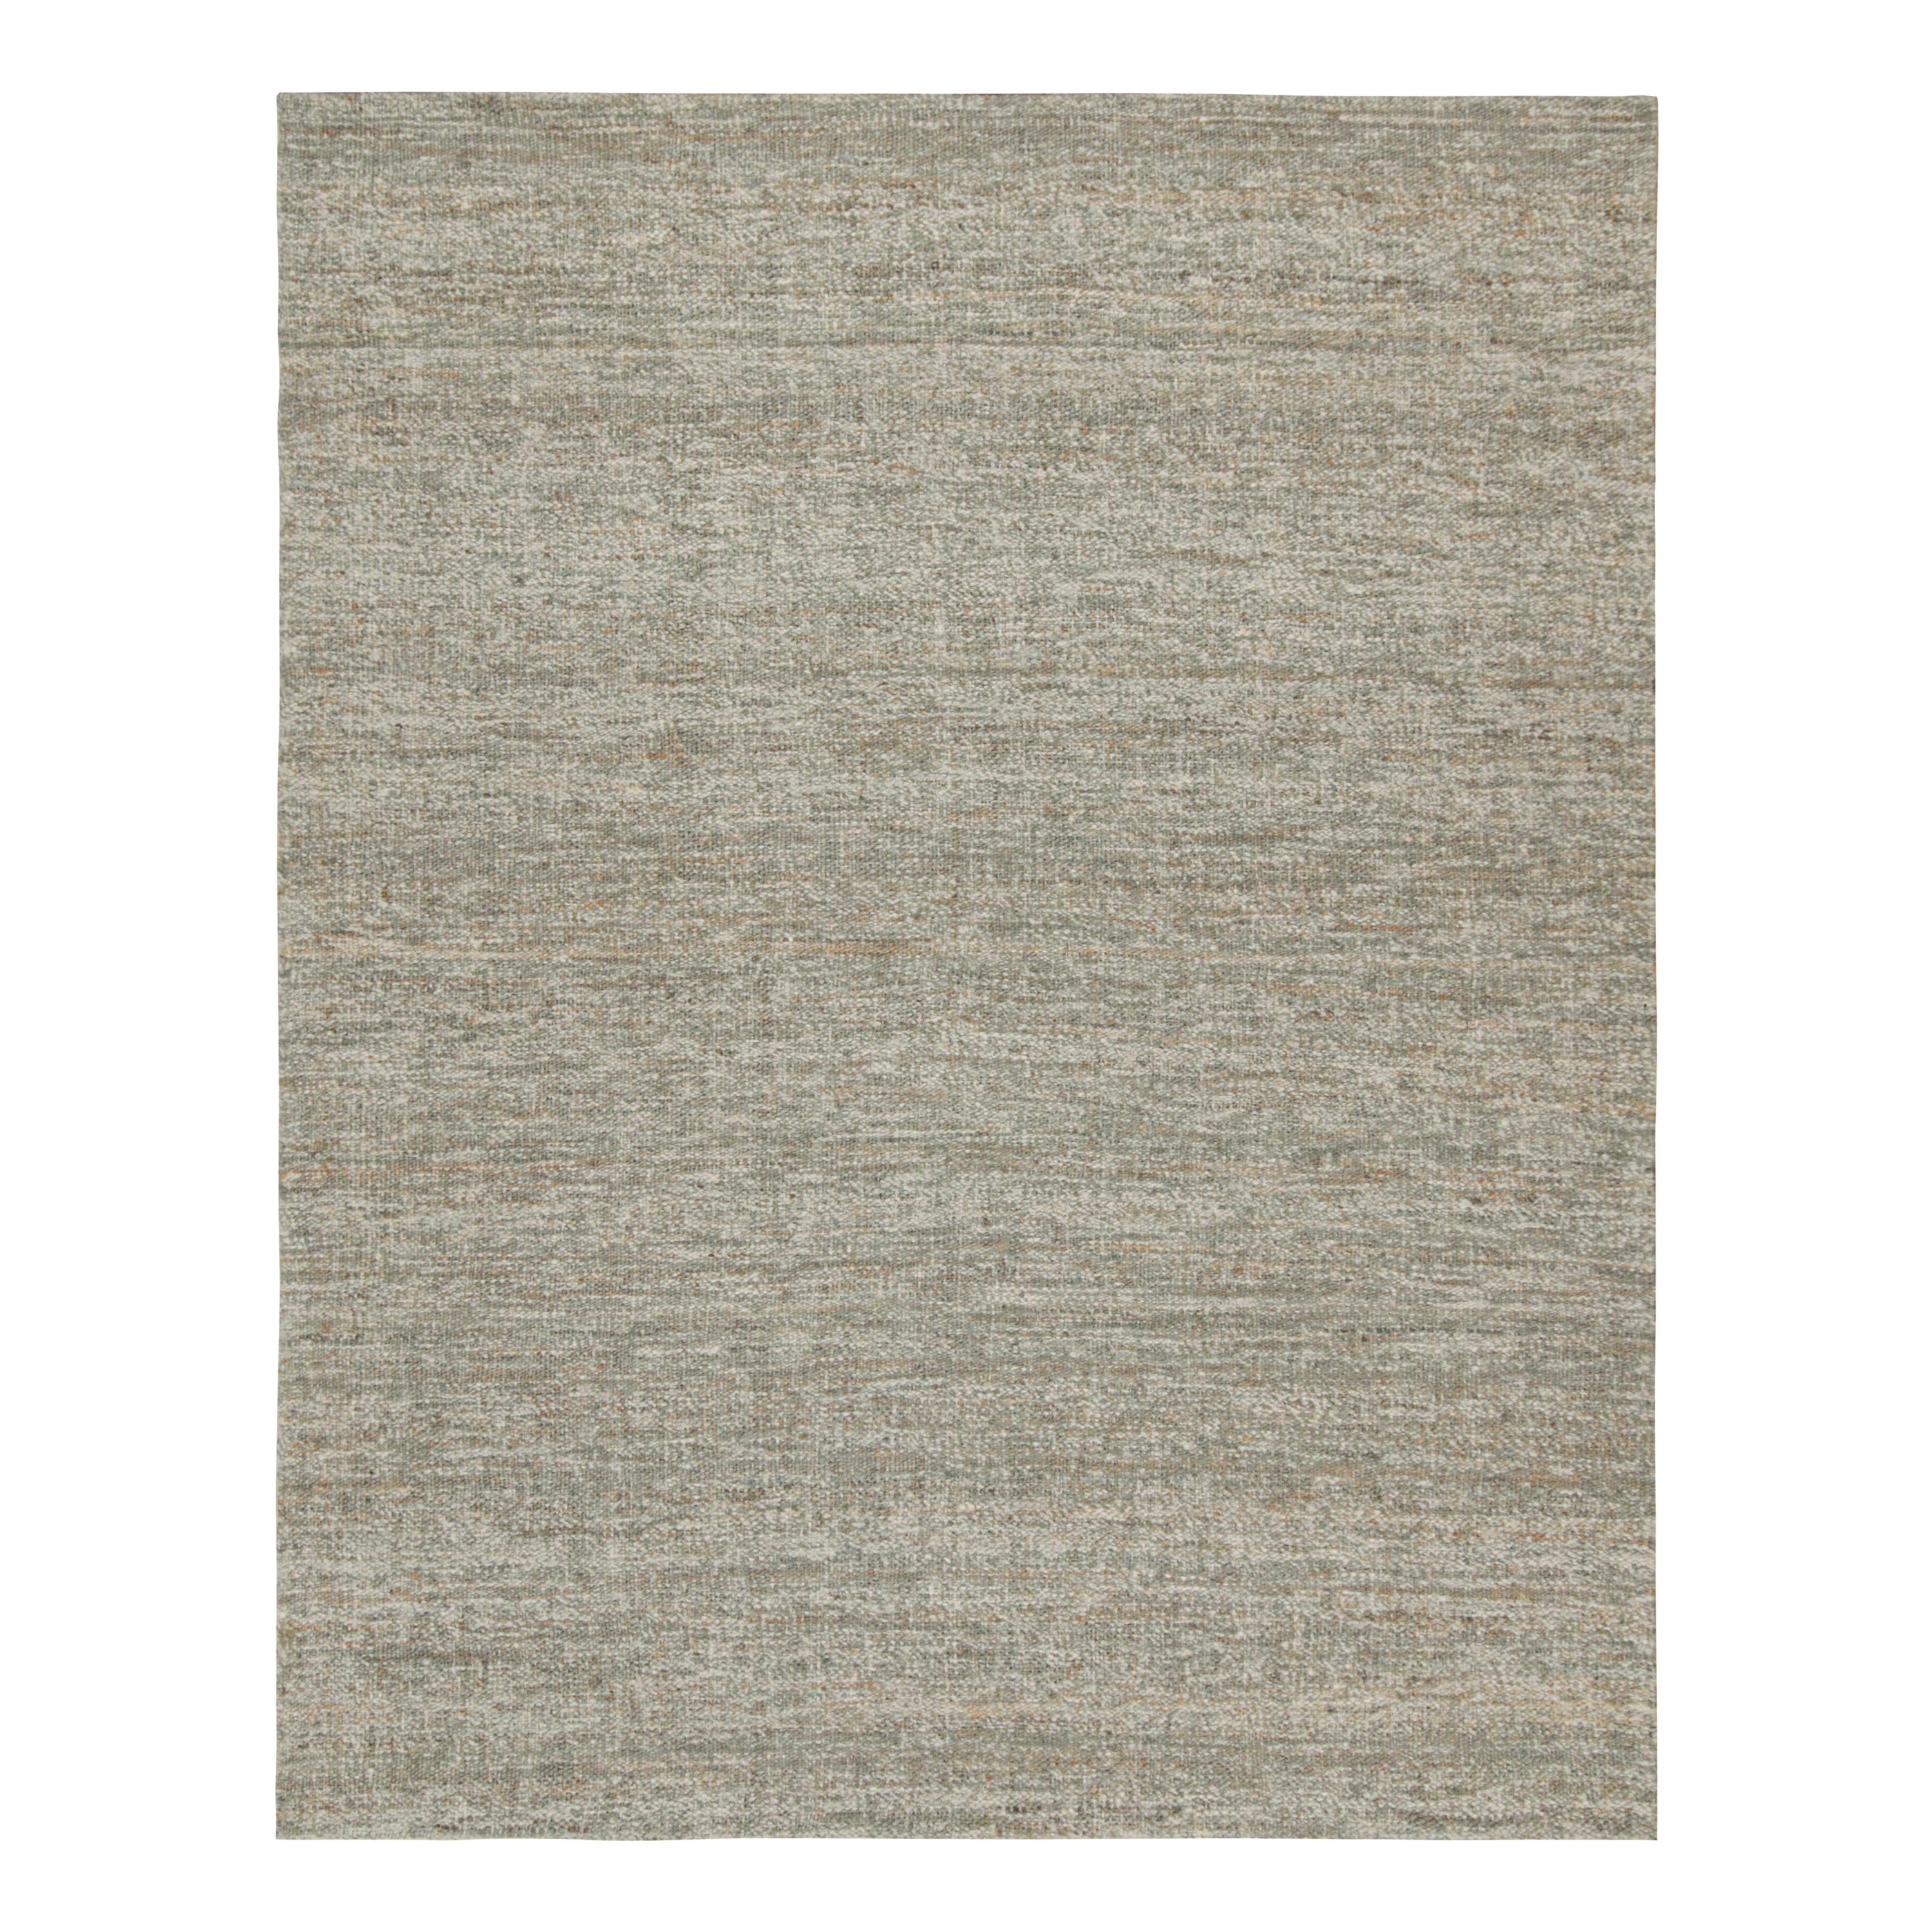 Rug & Kilim's Custom Modern Kilim Teppich in Grau & Weiß